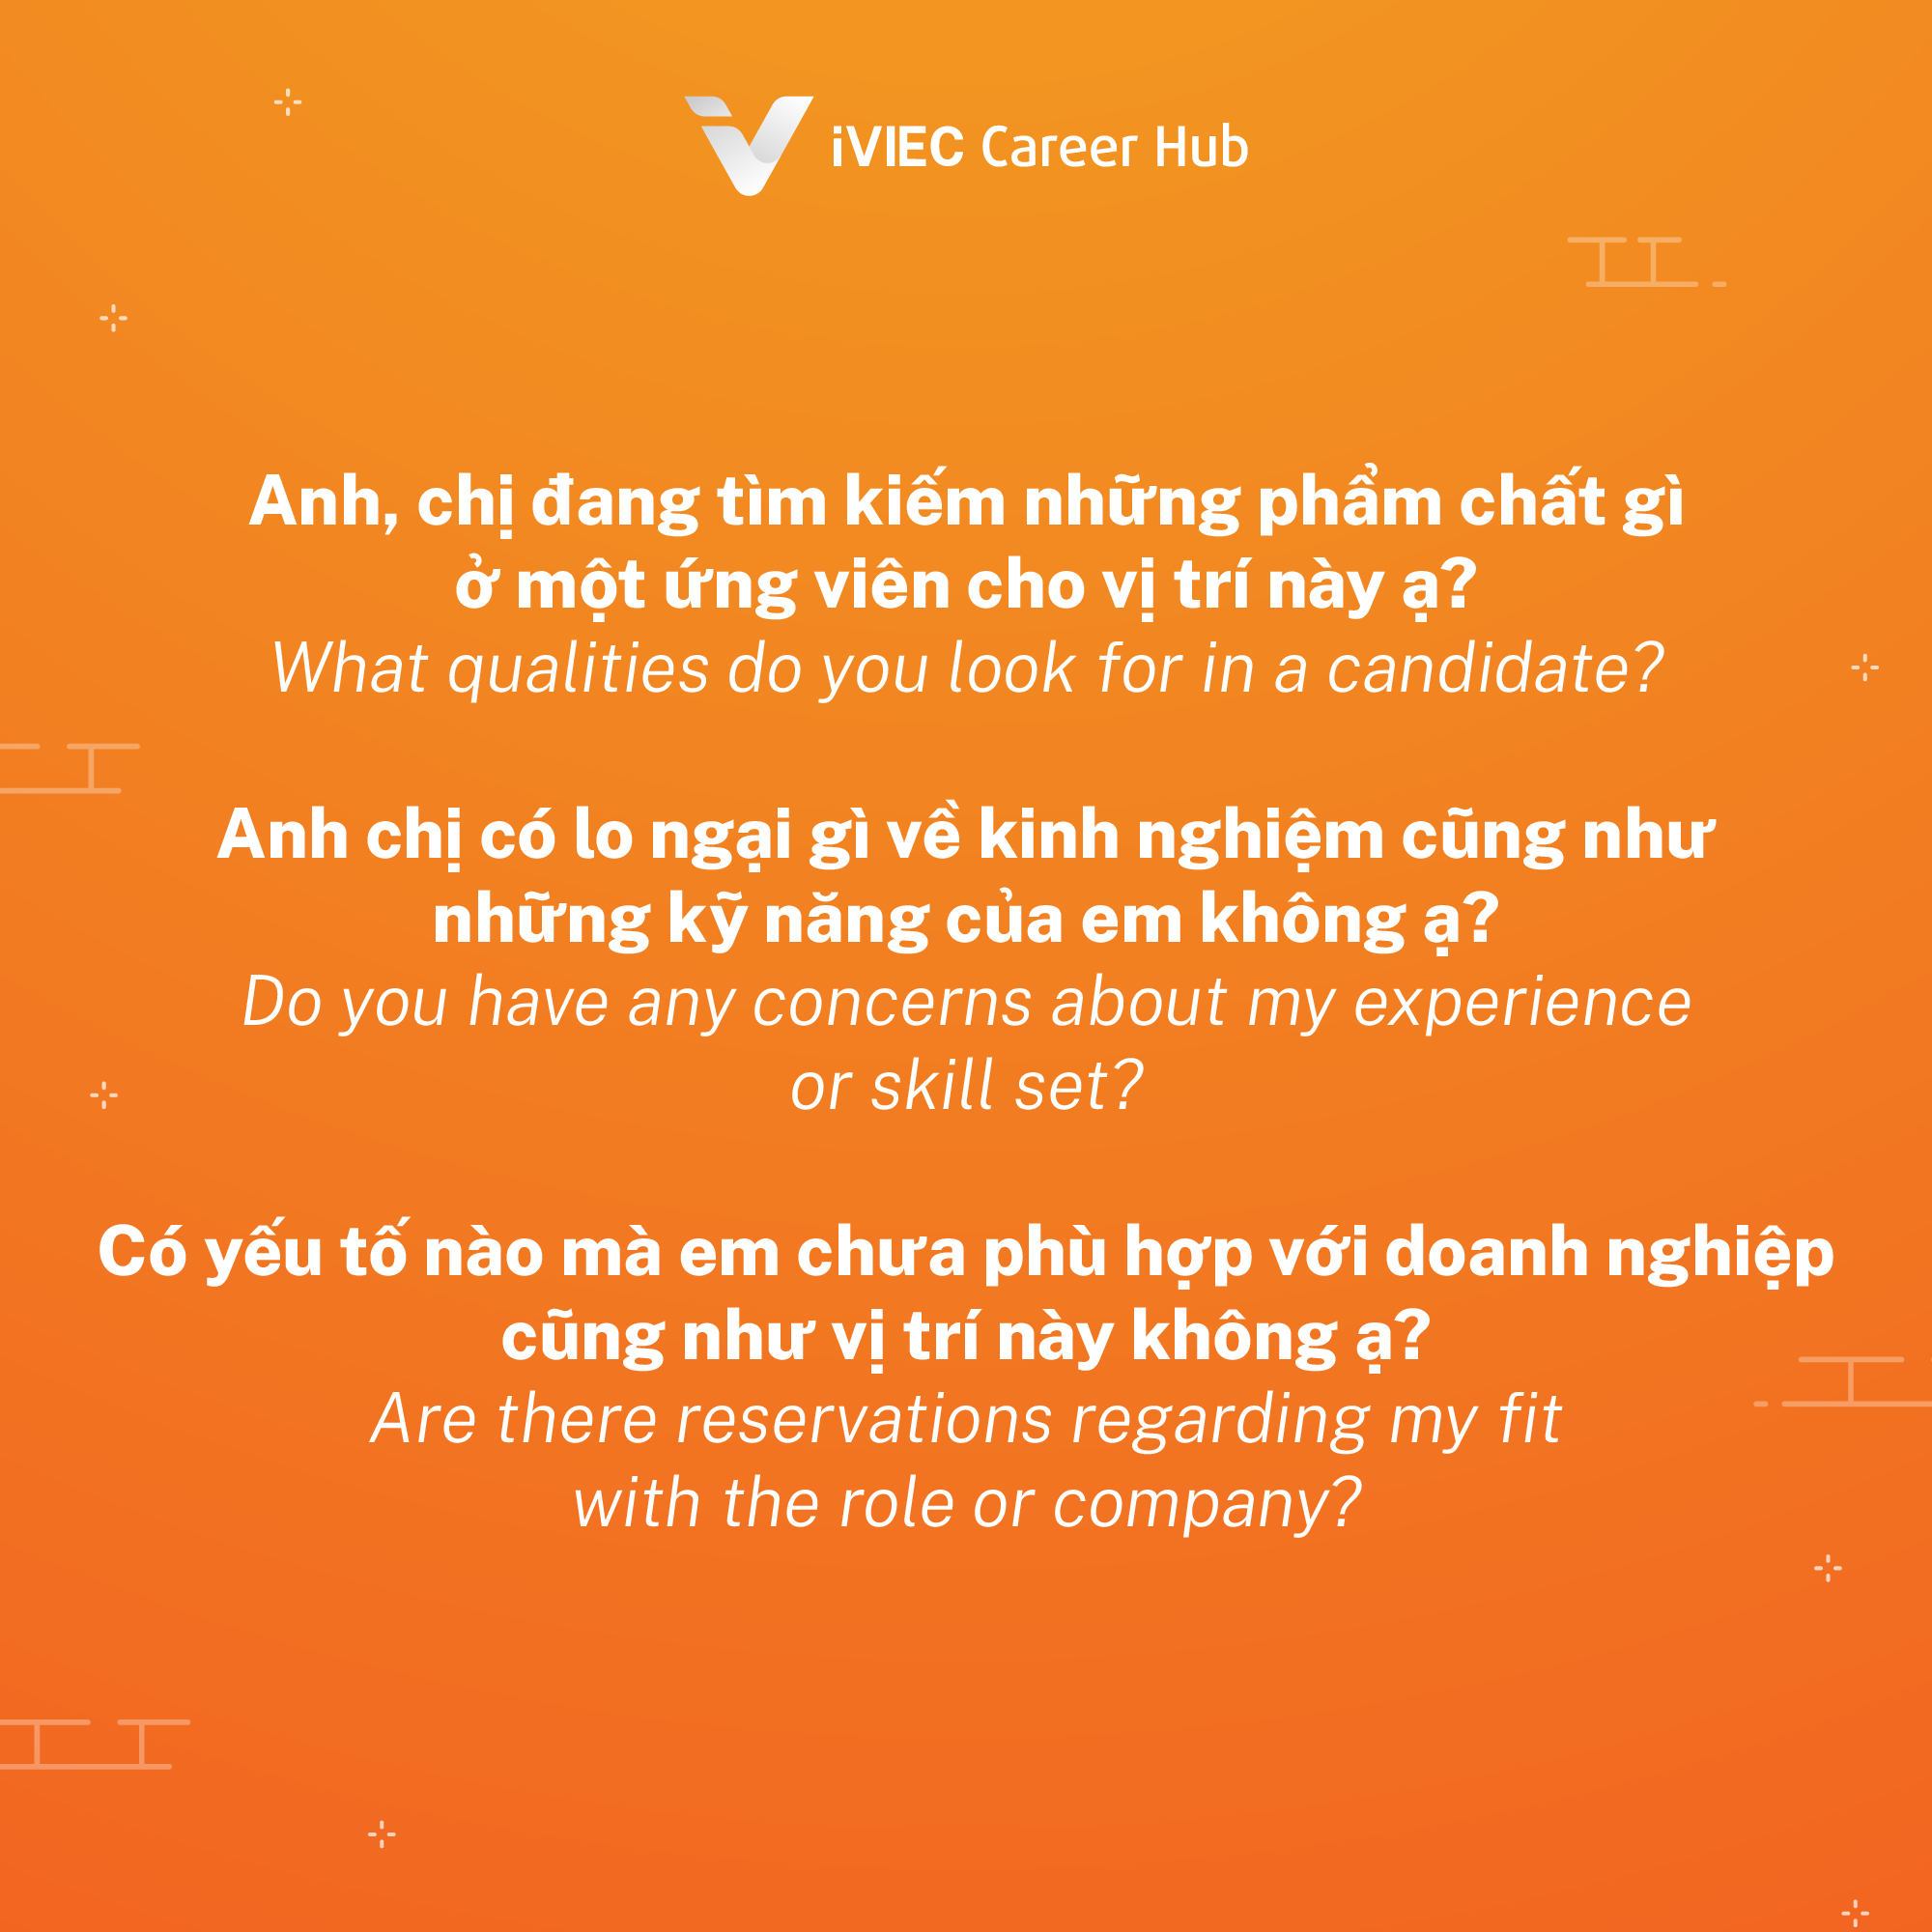 Series Phỏng vấn: Câu hỏi “Em có câu hỏi nào cho các anh chị tuyển dụng không?” - Trả lời Tiếng Anh và Tiếng Việt 